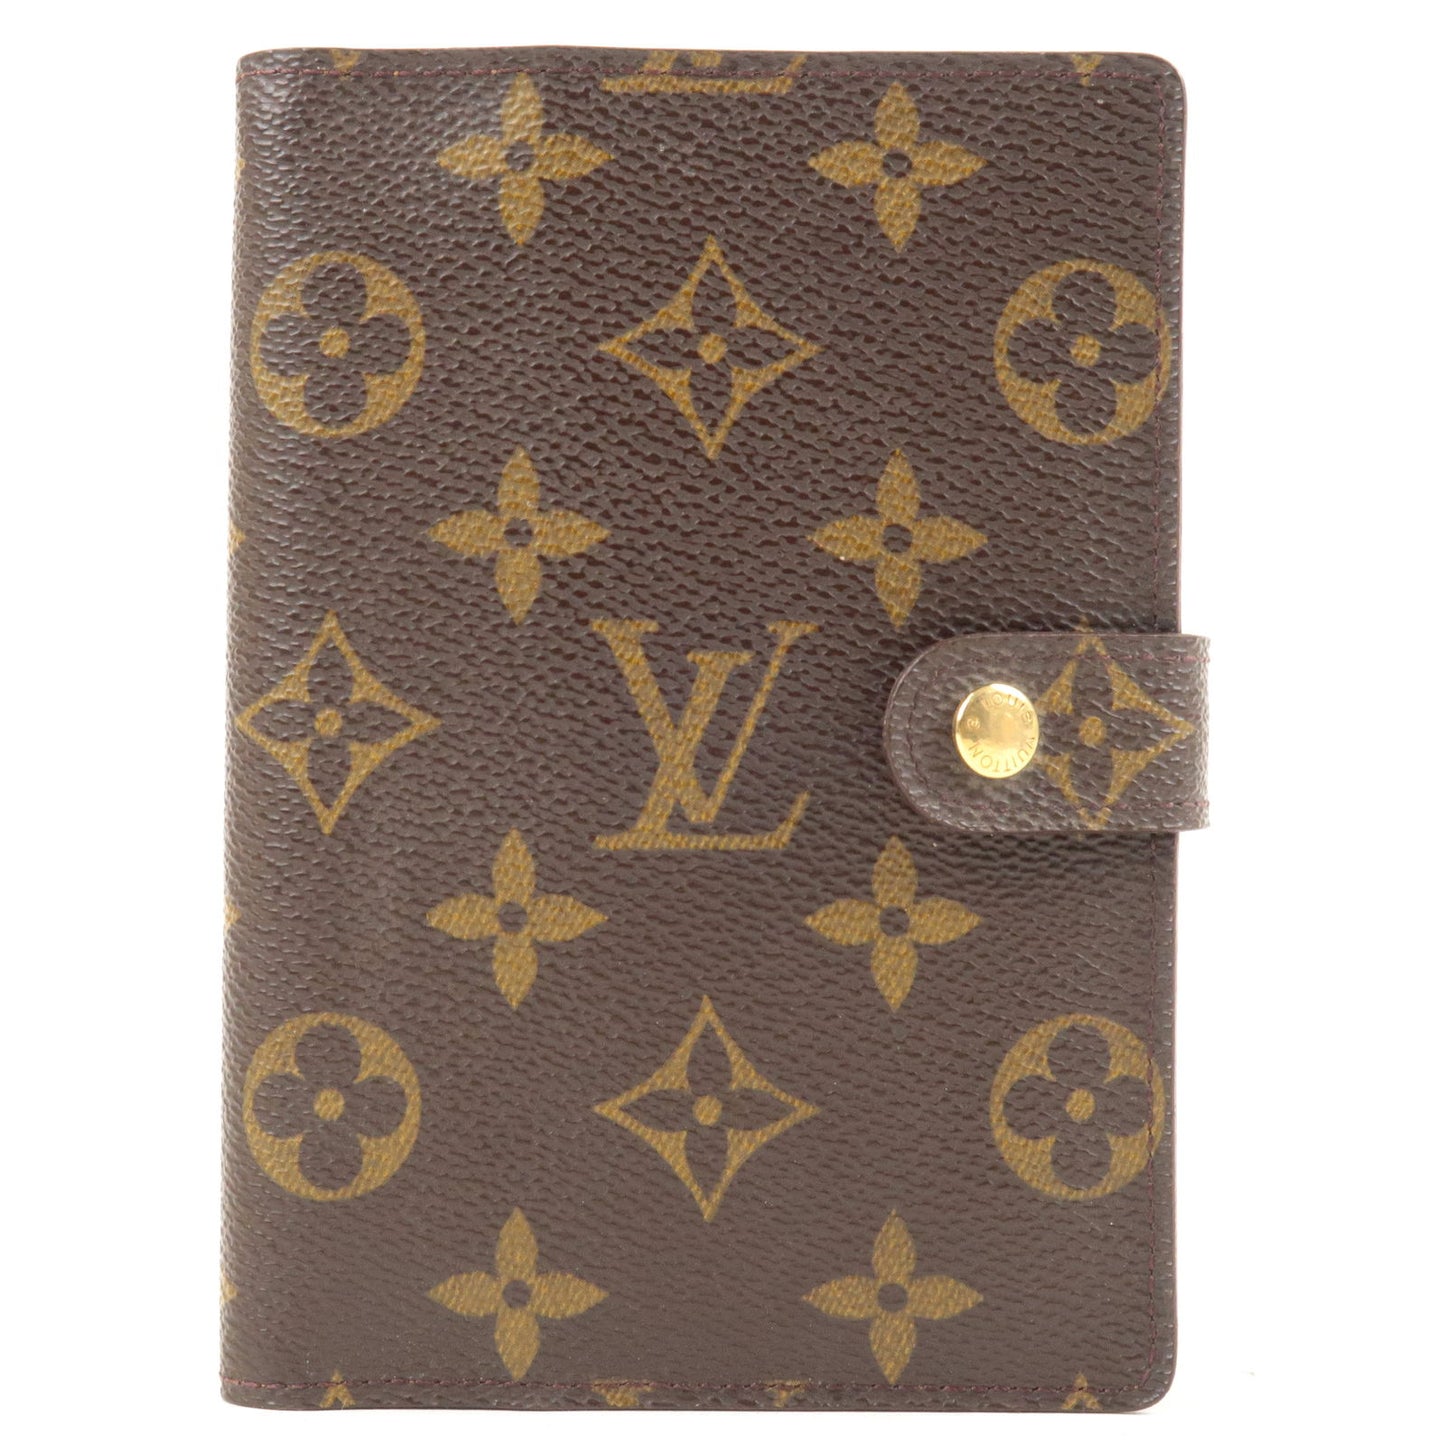 Louis Vuitton, Bags, Authentic Louis Vuitton Agenda Pm Passport Holder  Wallet